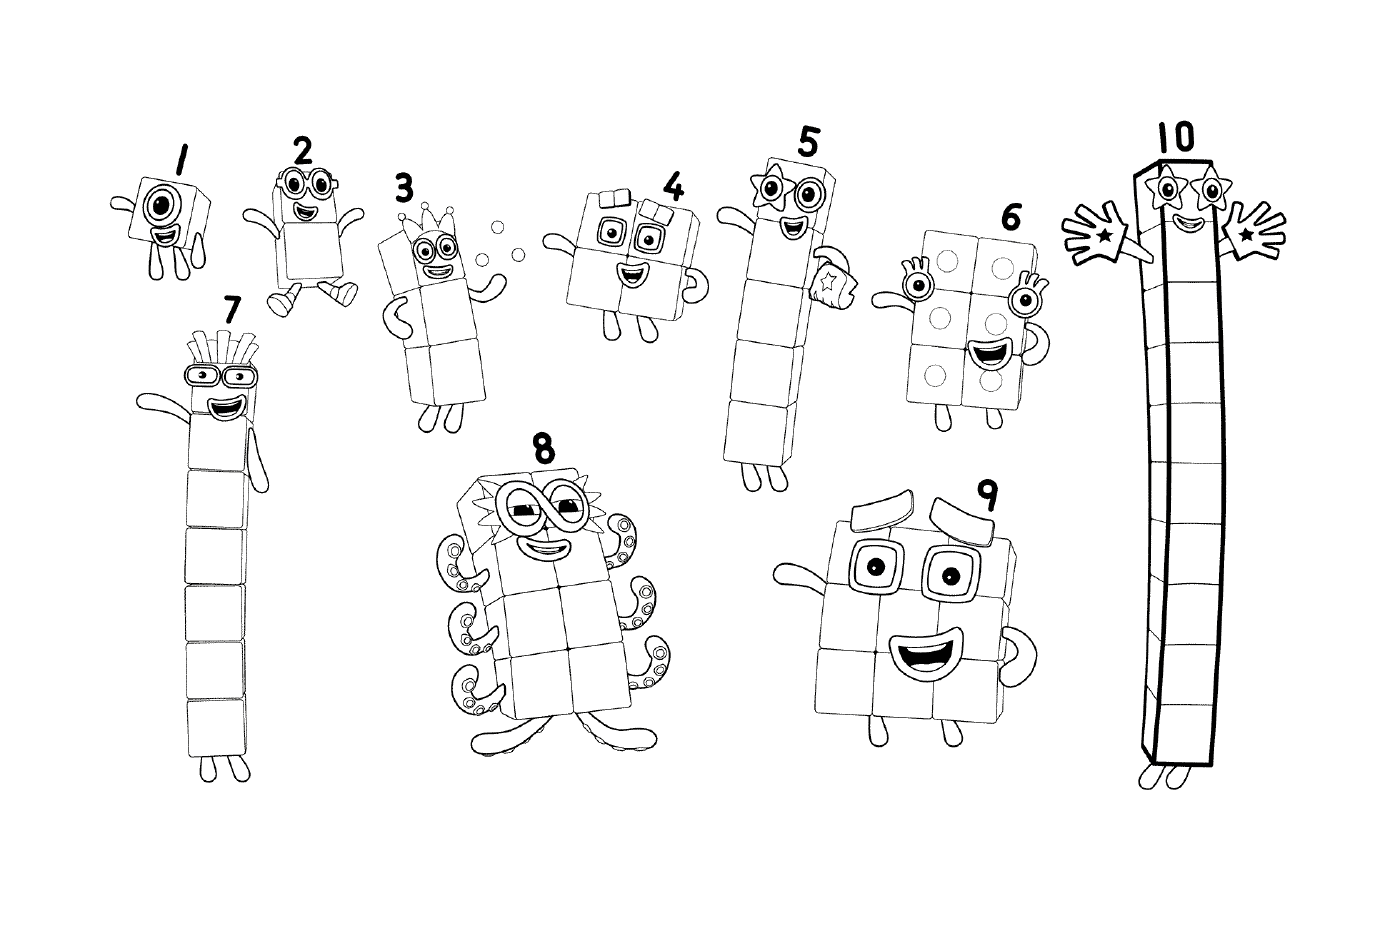  Numbers 1 to 10 of Numberblocks, series of drawings 